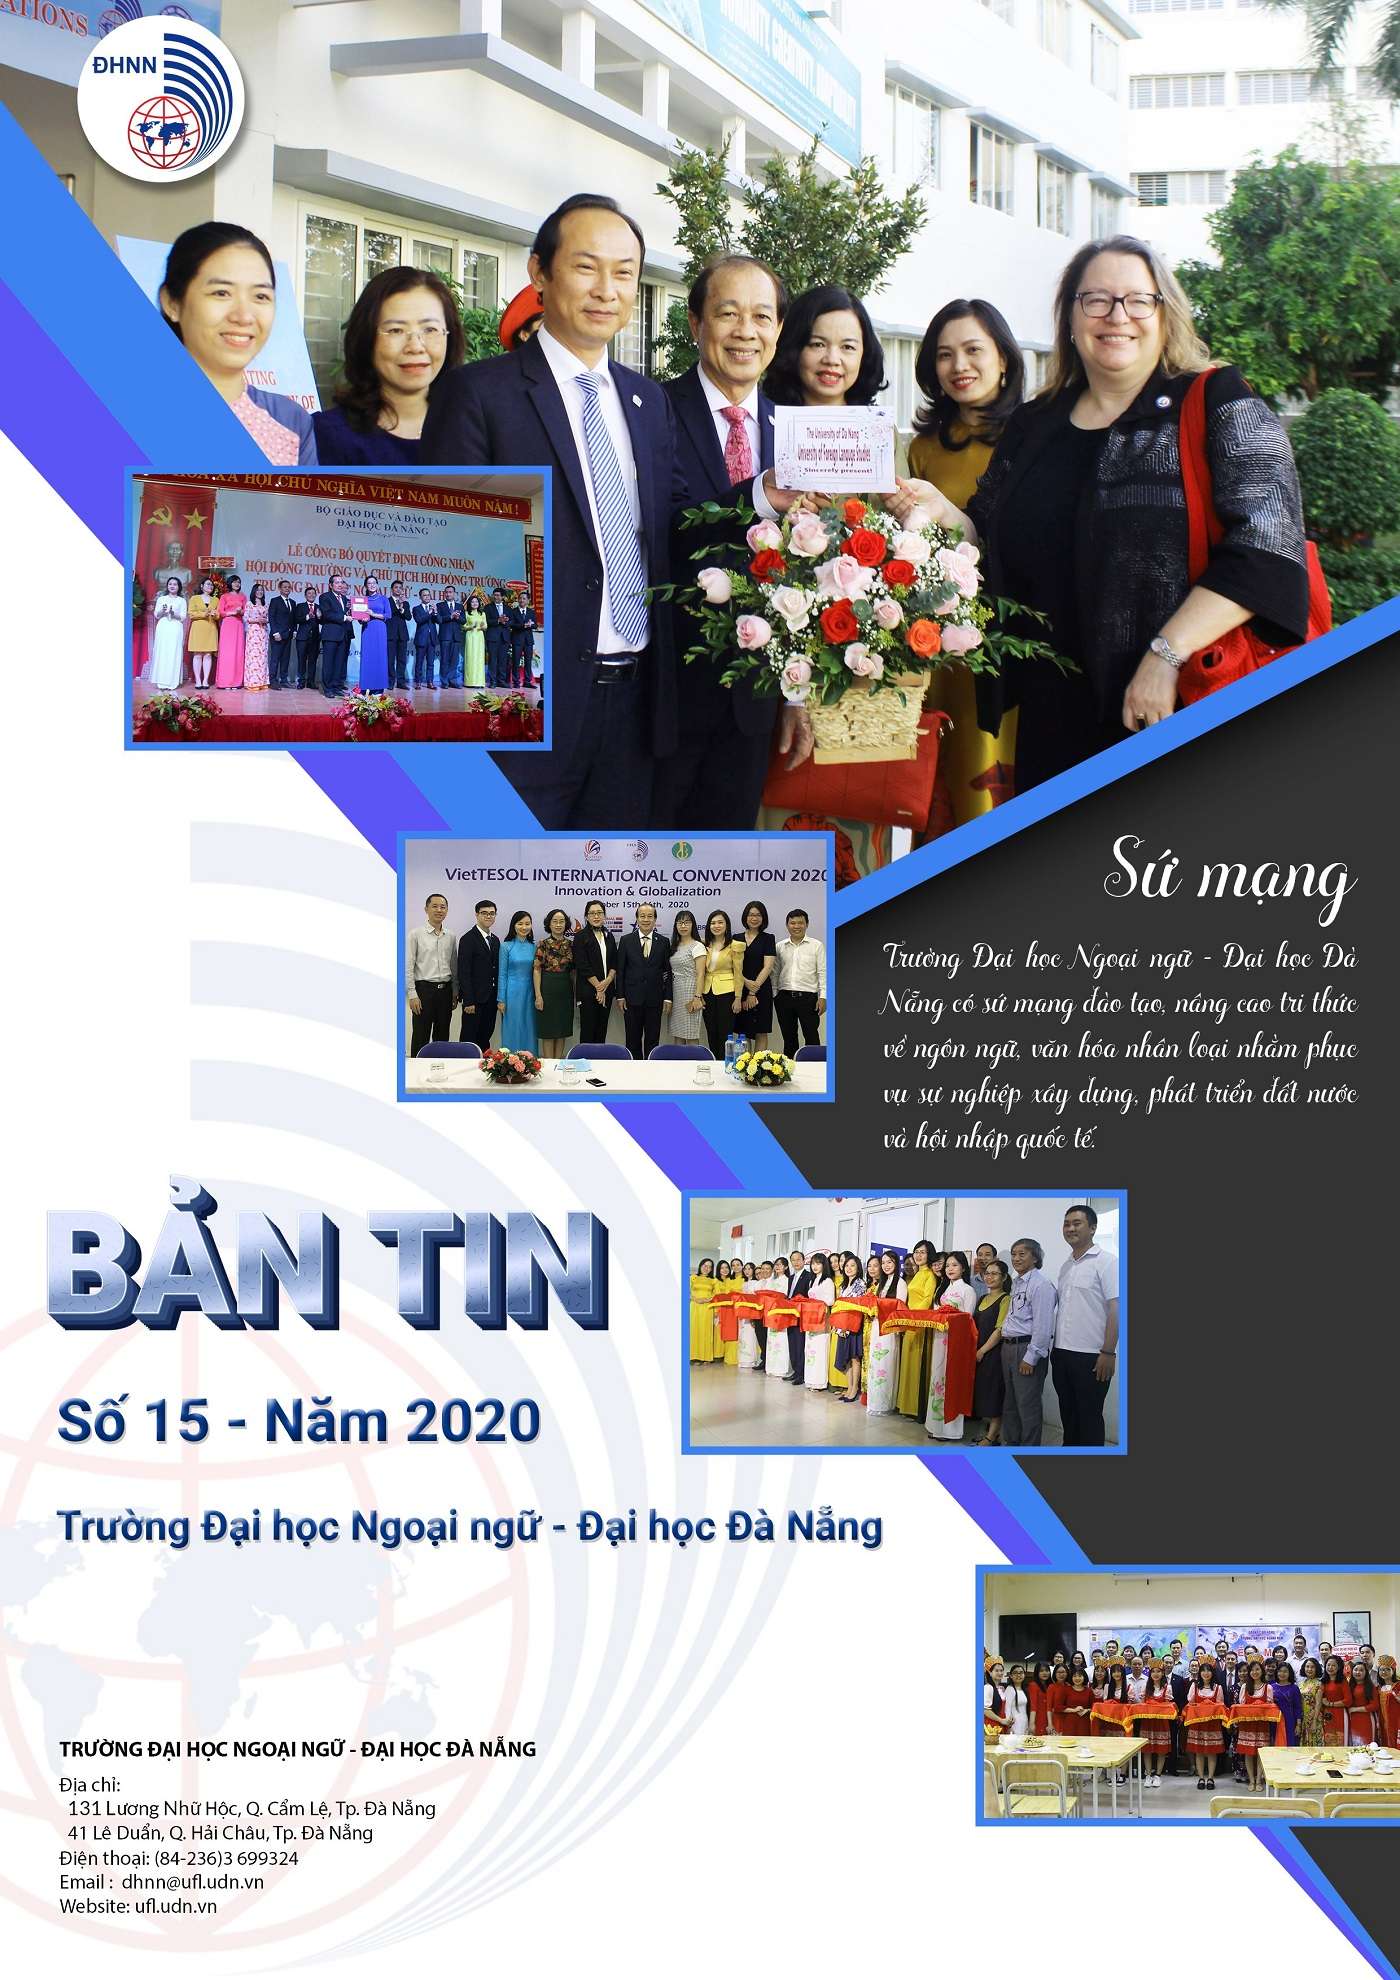 Chào mừng bạn đến với Công ty TNHH LG Electronics Việt Nam Talent Network